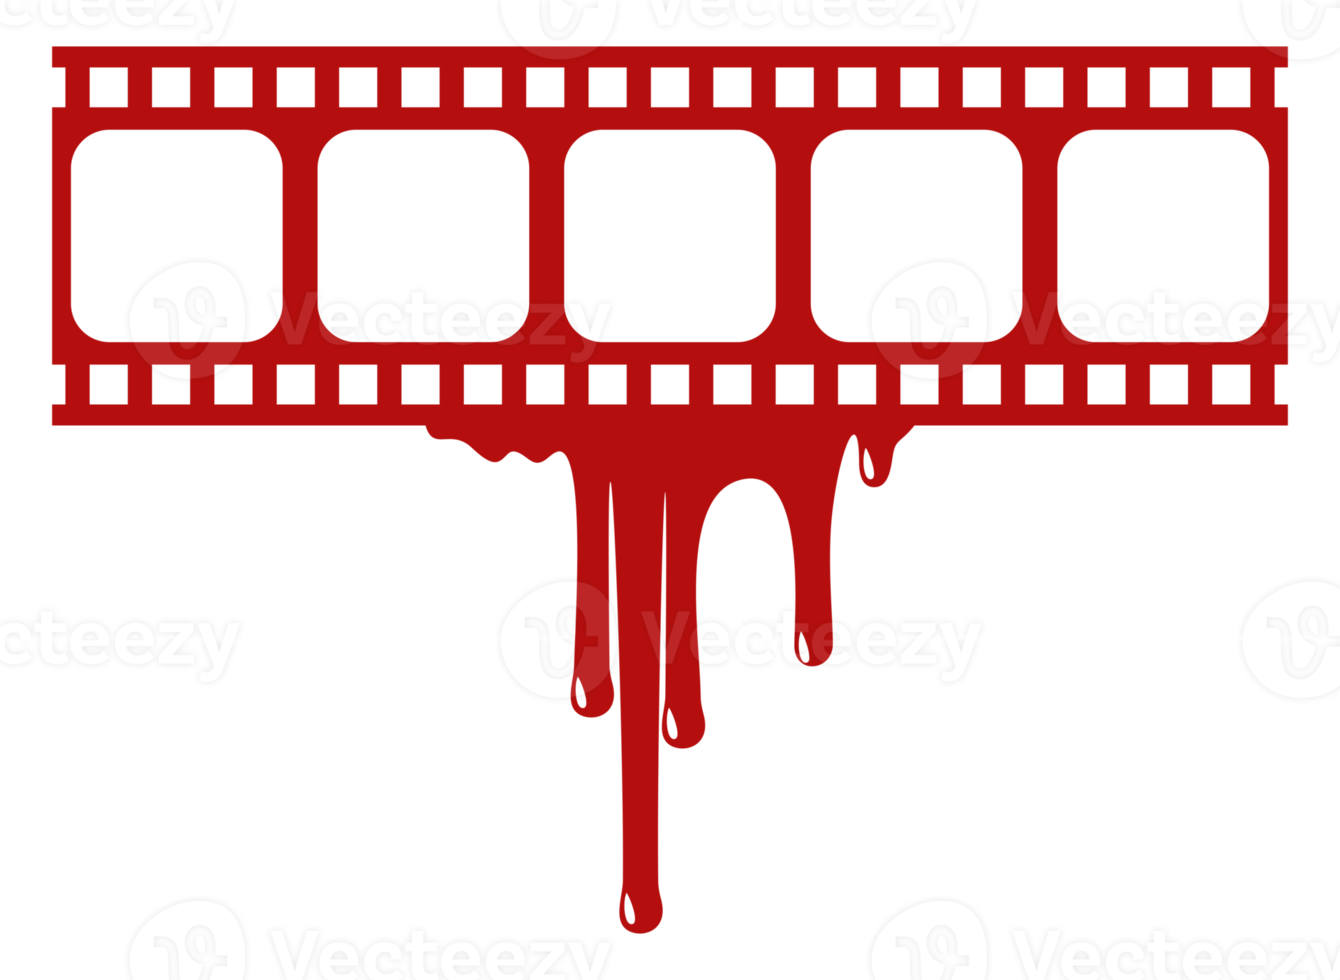 Silhouette des blutigen Streifenfilmzeichens für Filmikonensymbol mit Genre-Horror, Thriller, Gore, Sadistic, Splatter, Slasher, Mysterium, Grusel. PNG-Format png